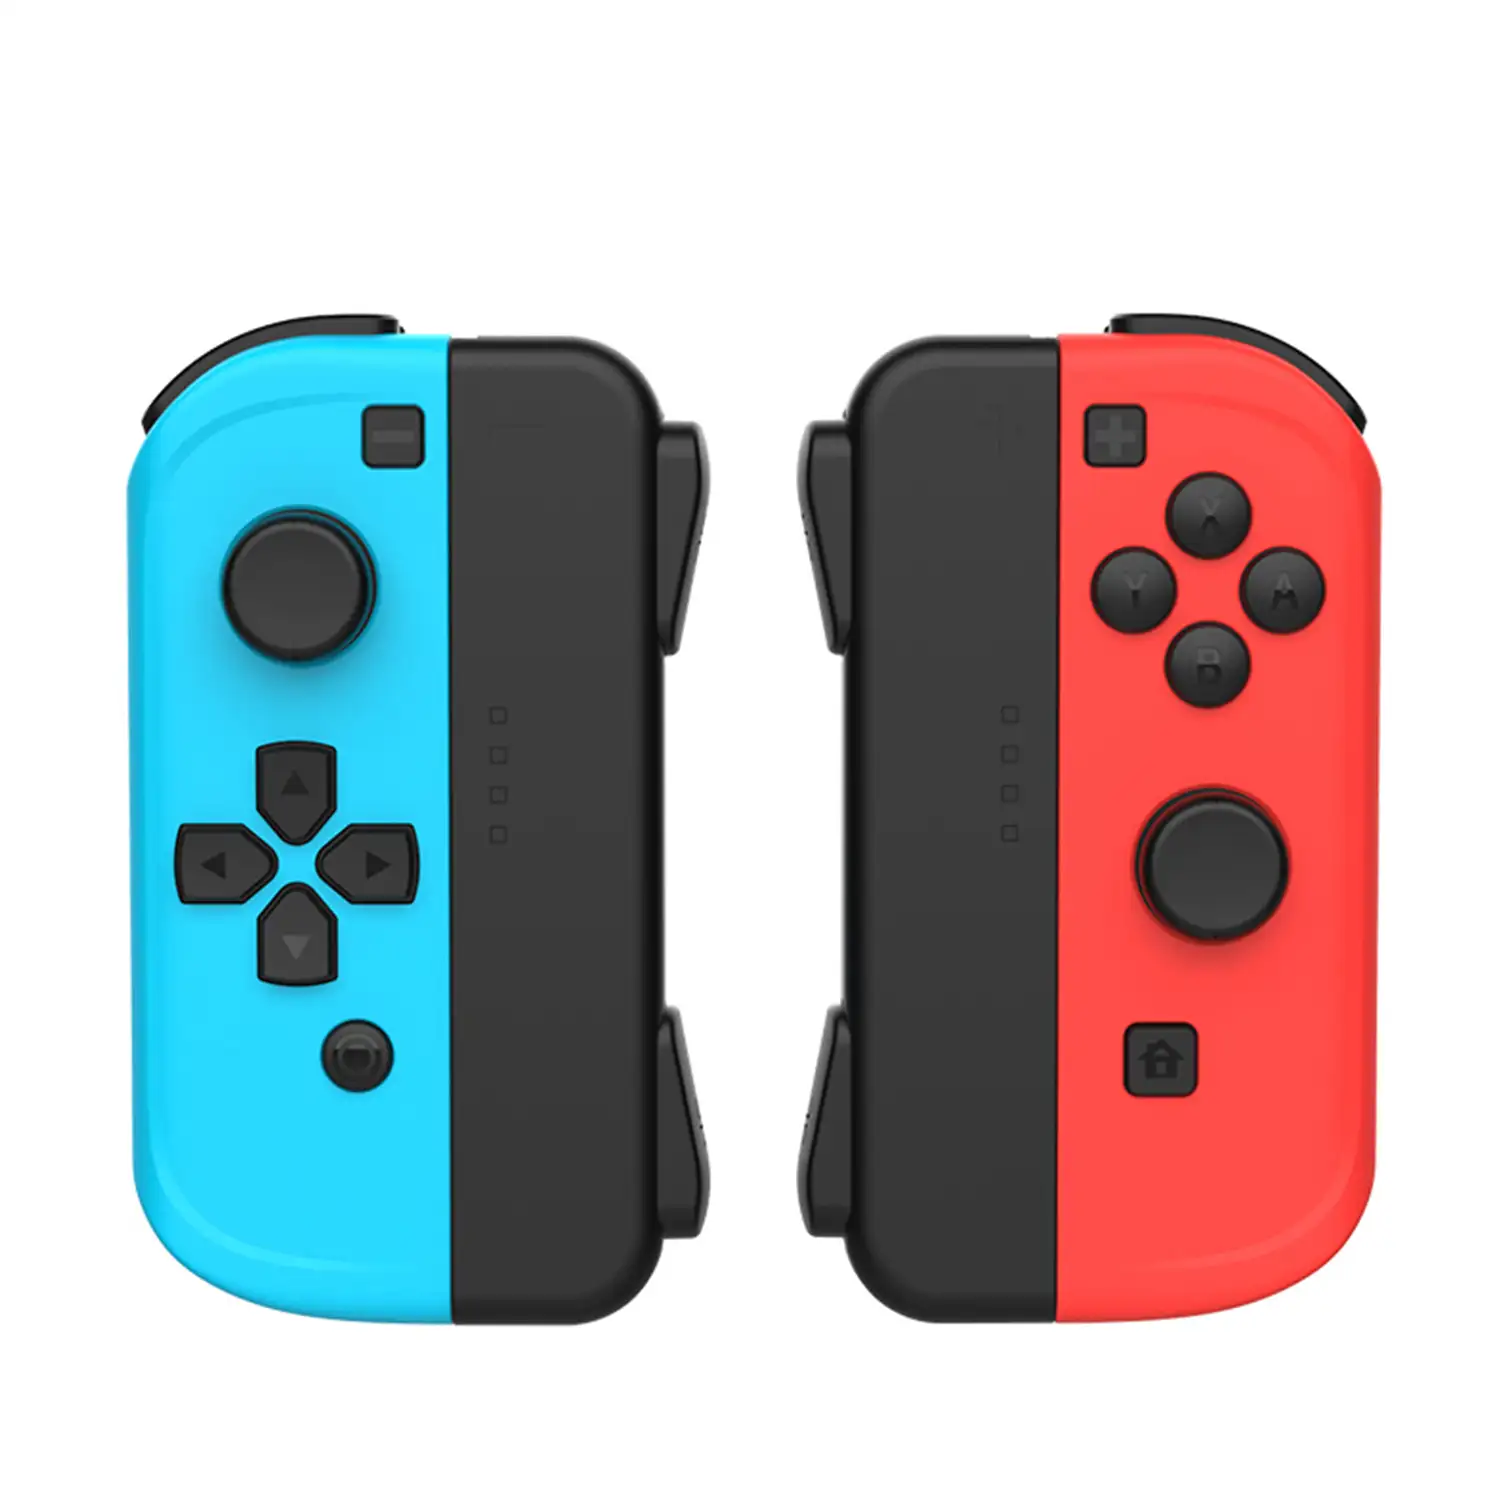 Mandos TNS1810 tipo Joy-Con compatibles con Nintendo Switch.